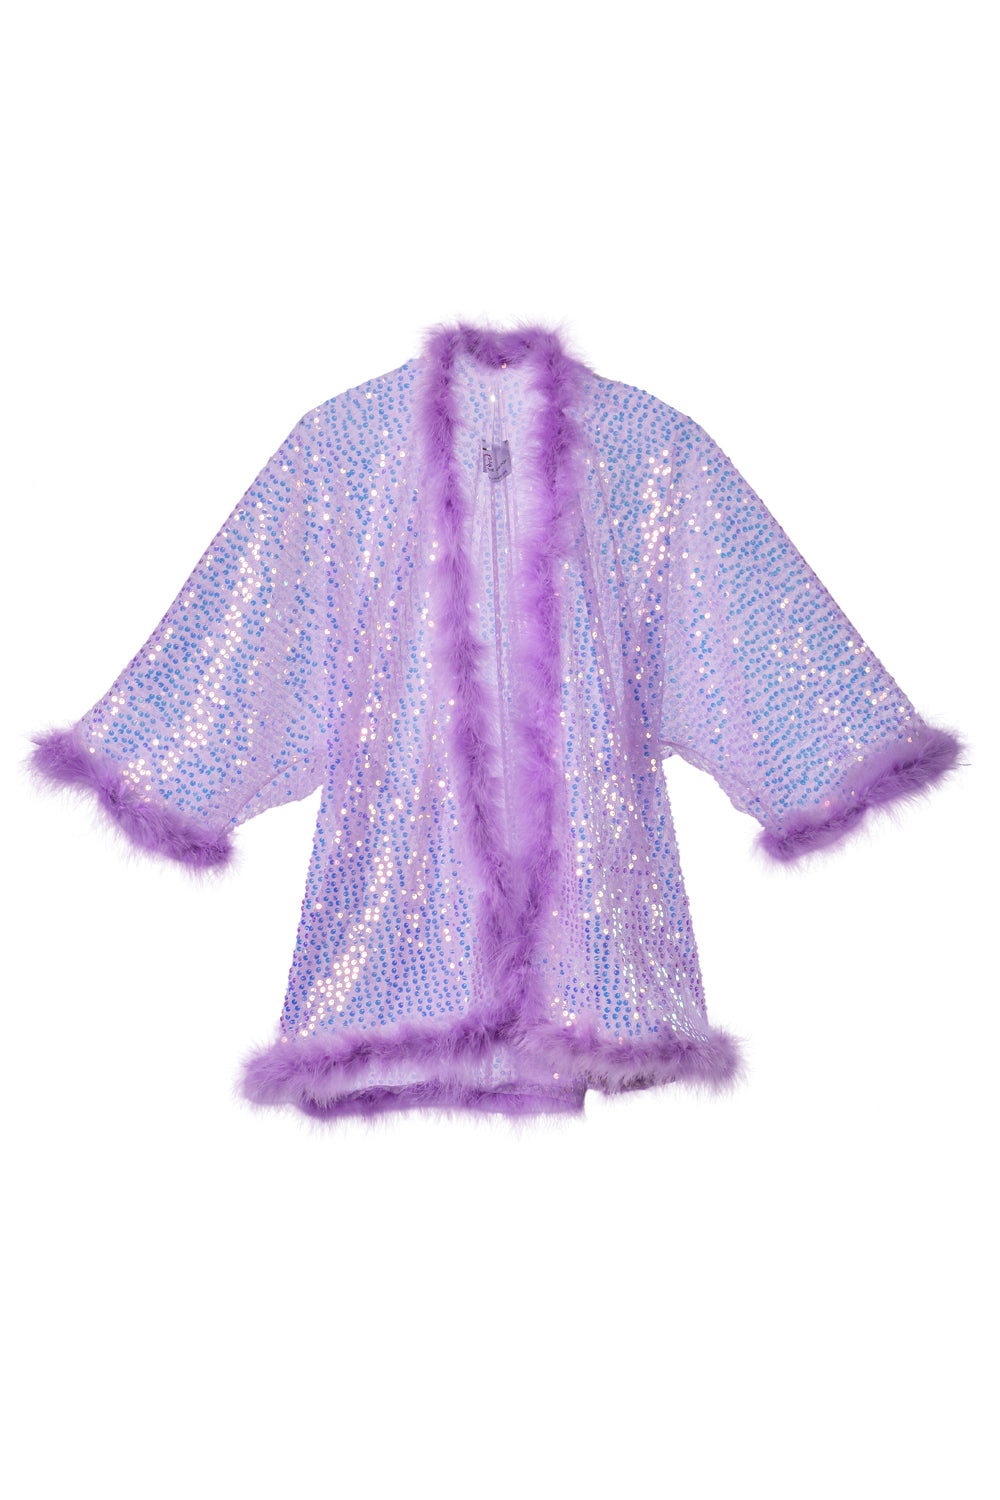 Fuzzy Sequin Kimono- Lavender Dreams